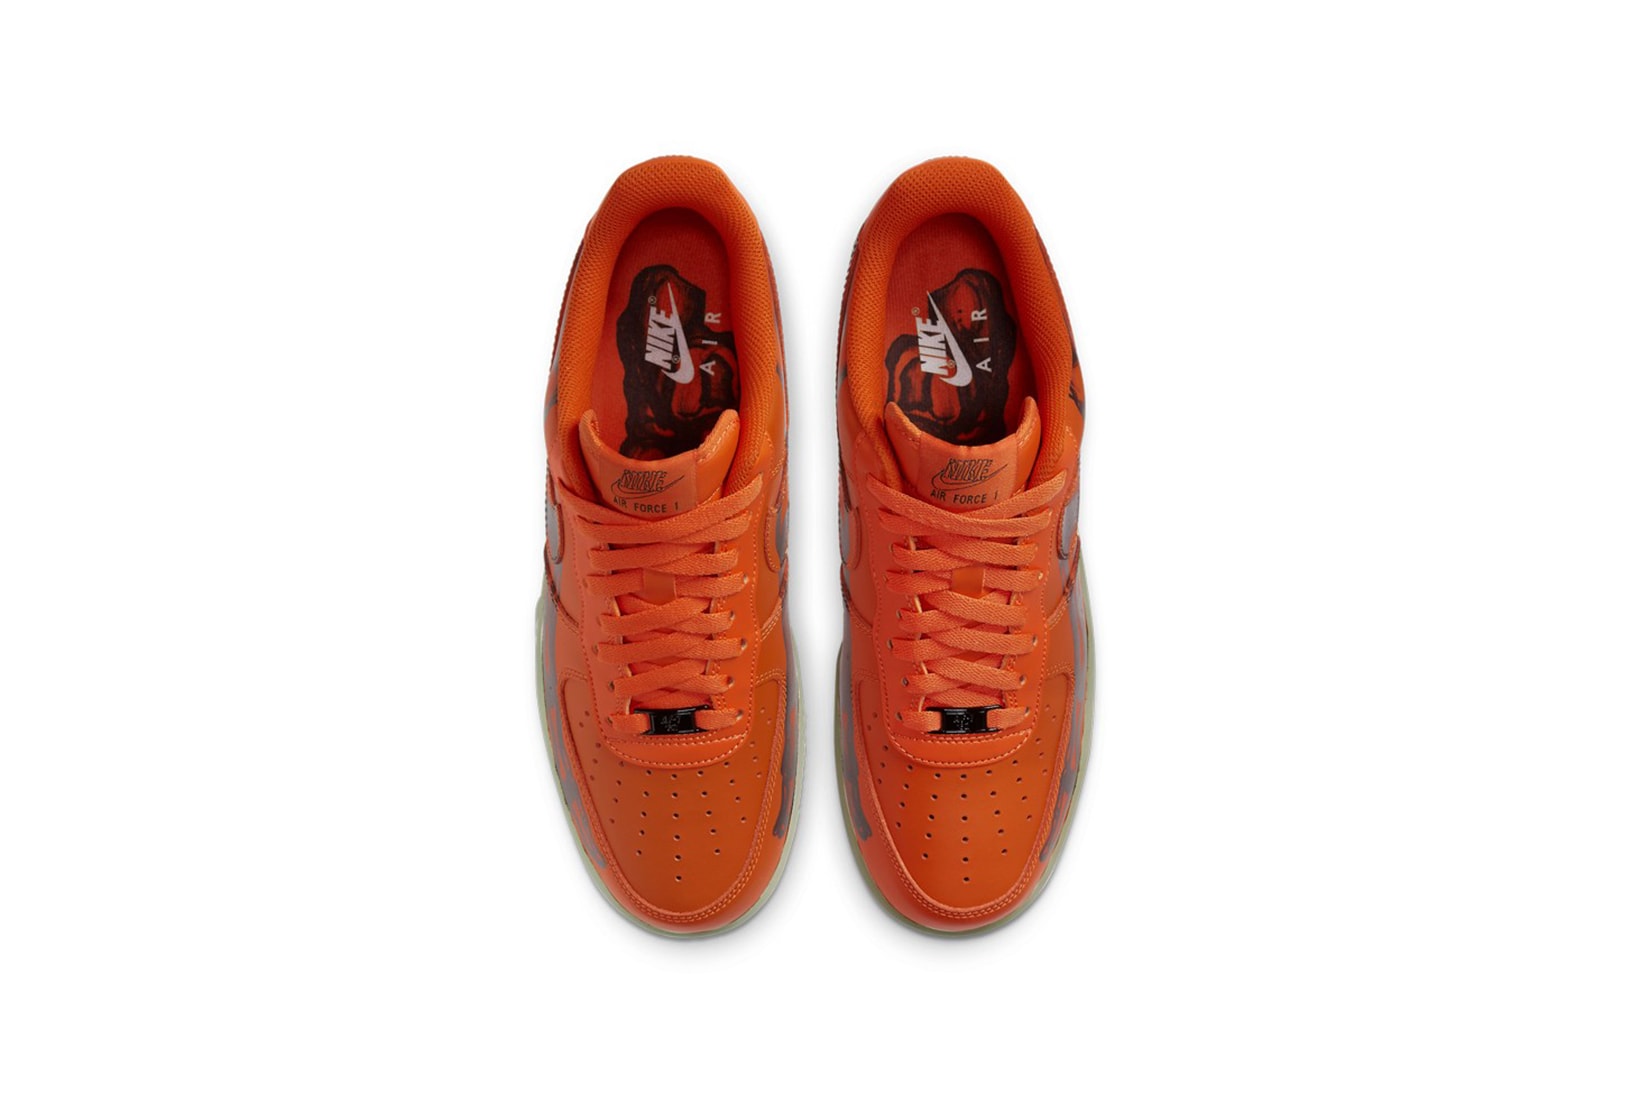 nike air force 1 sneakers skeleton halloween orange black colorway sneakerhead footwear shoes 